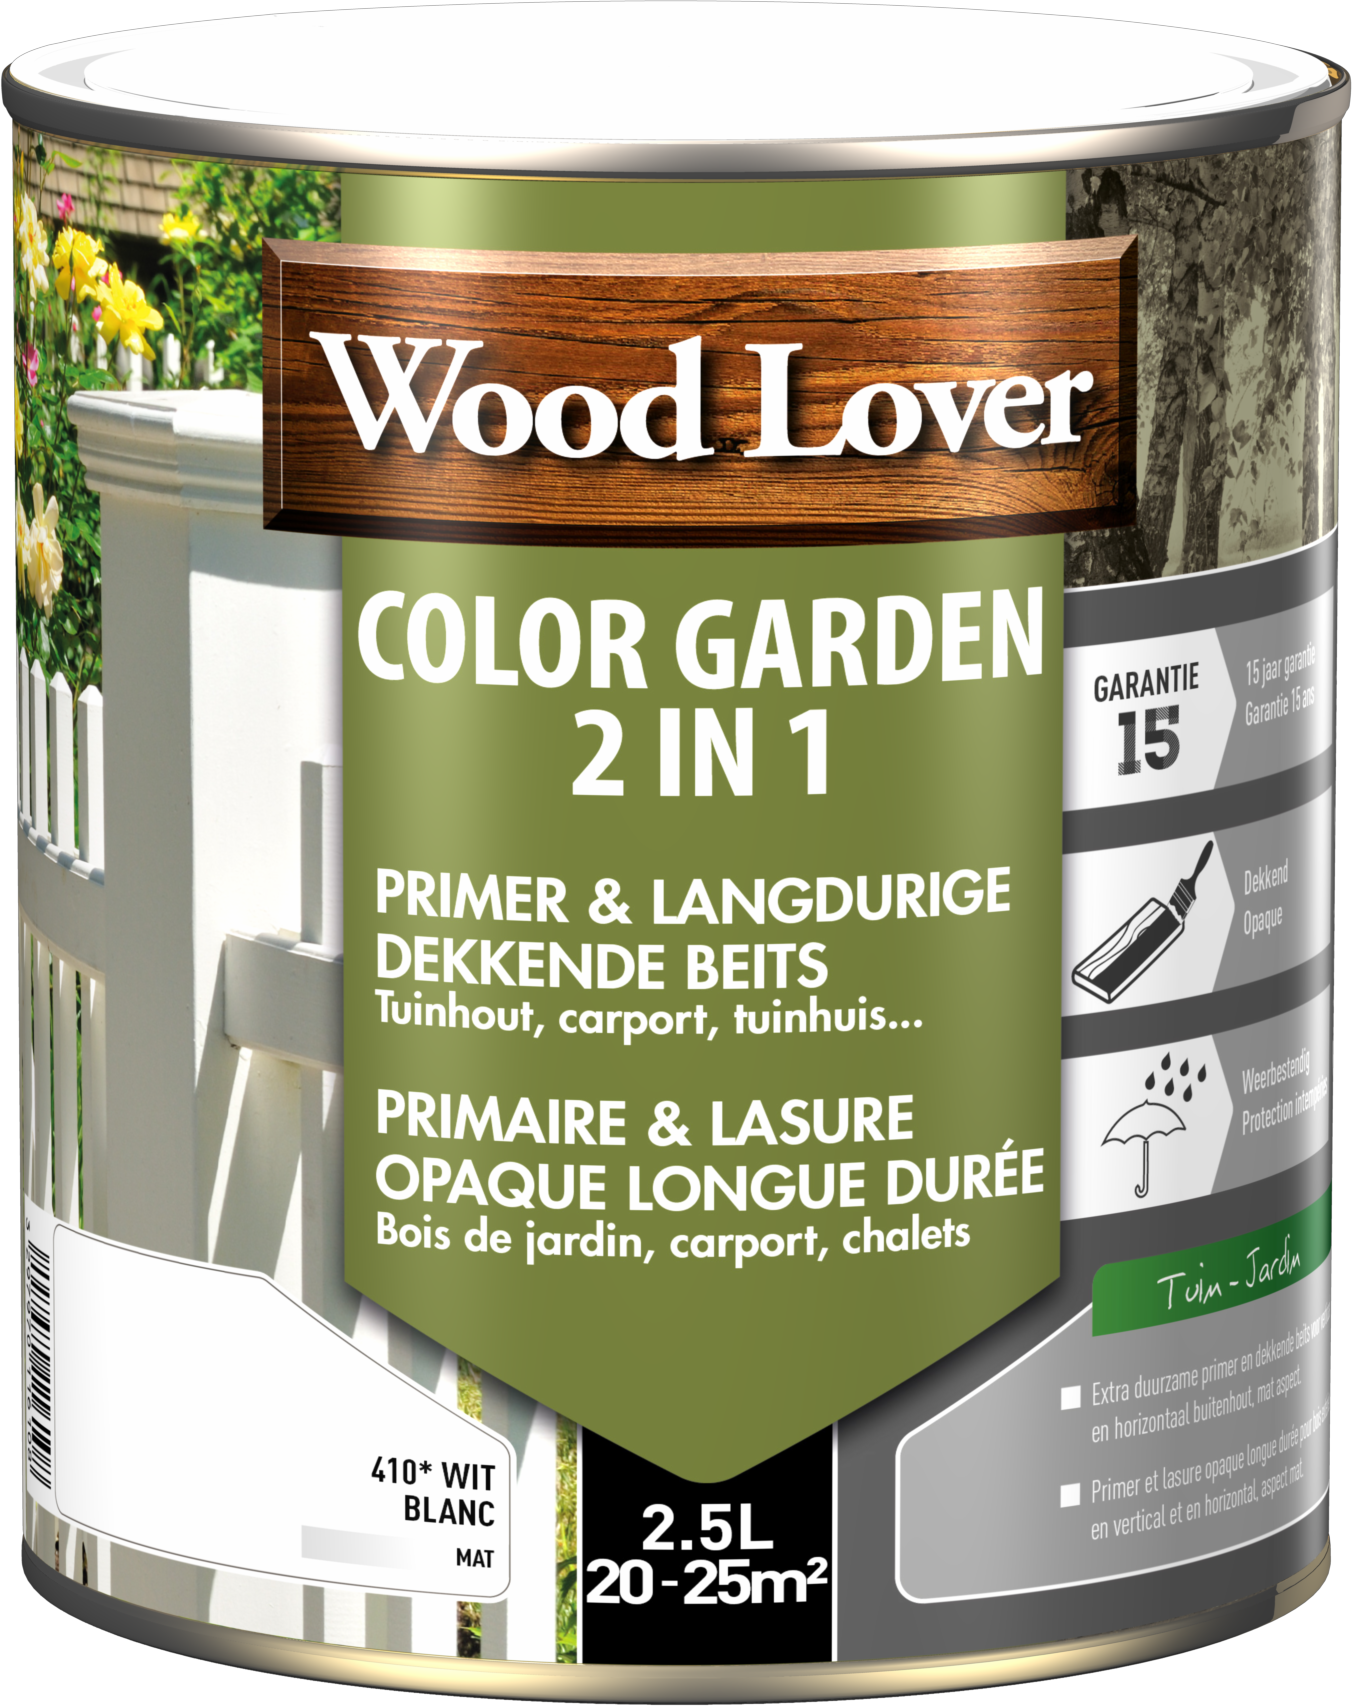 WoodLover Color Garden 2 in 1